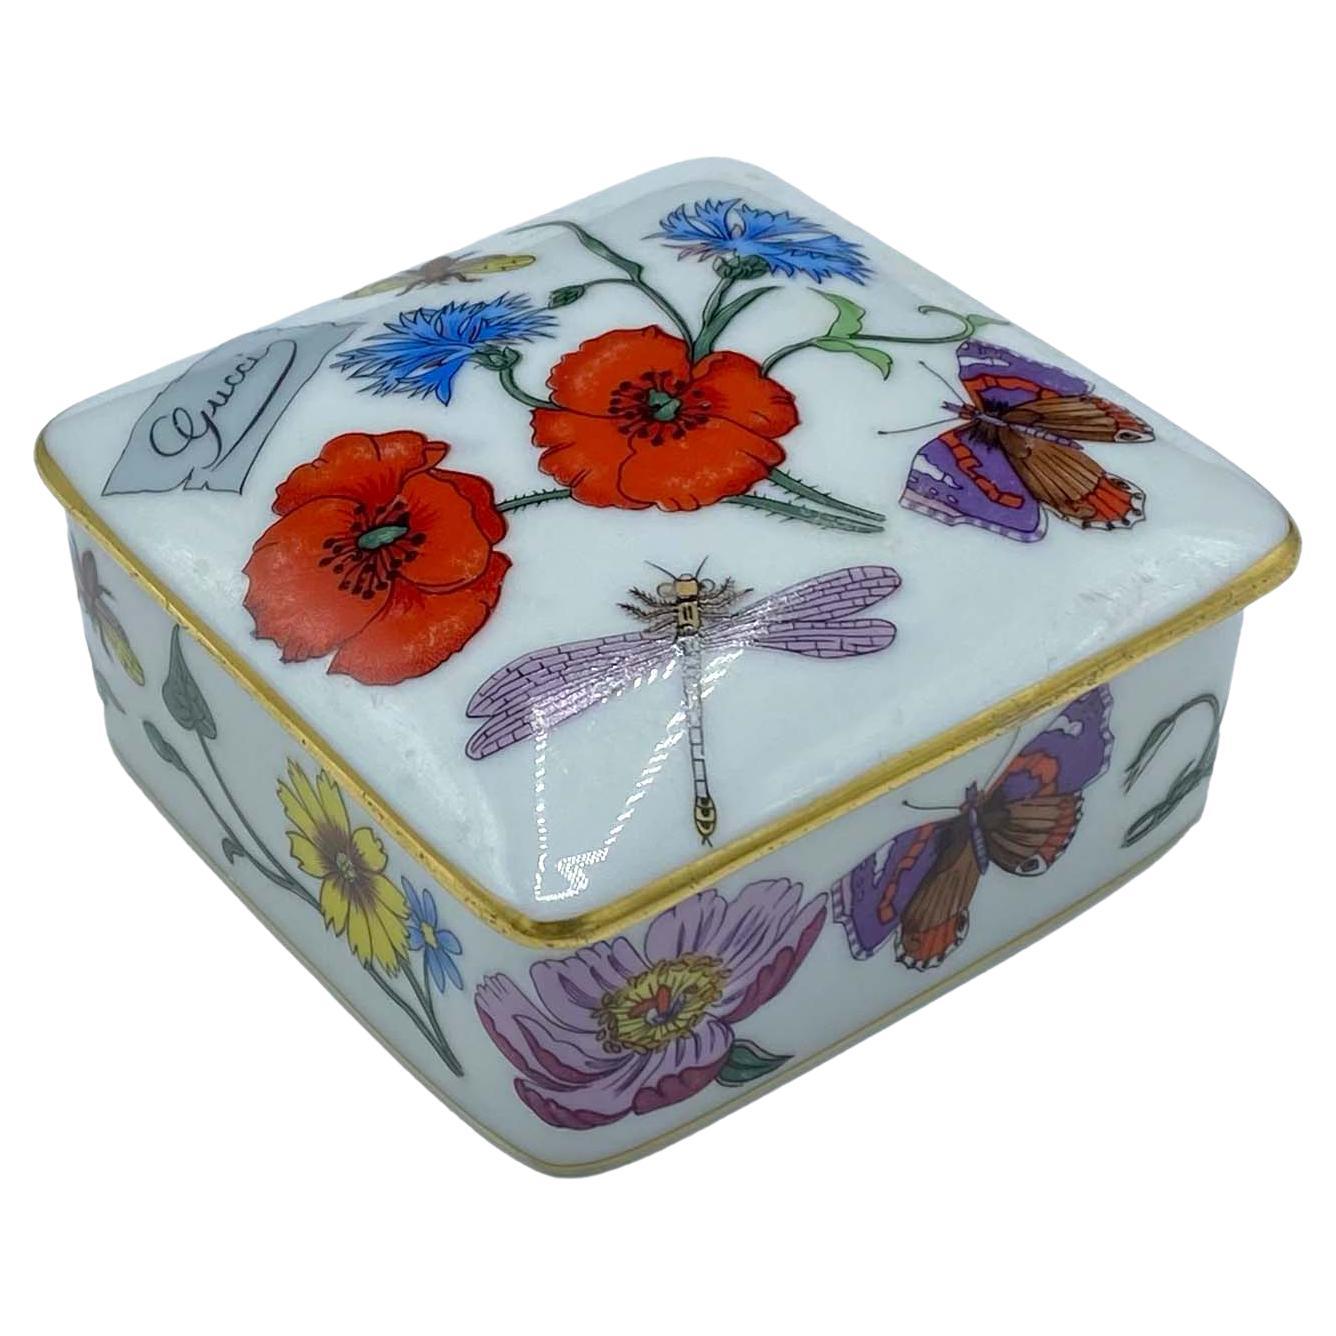 Vintage Gucci Bernardaud Limoges Floral Porcelain Trinket/Jewlery Box